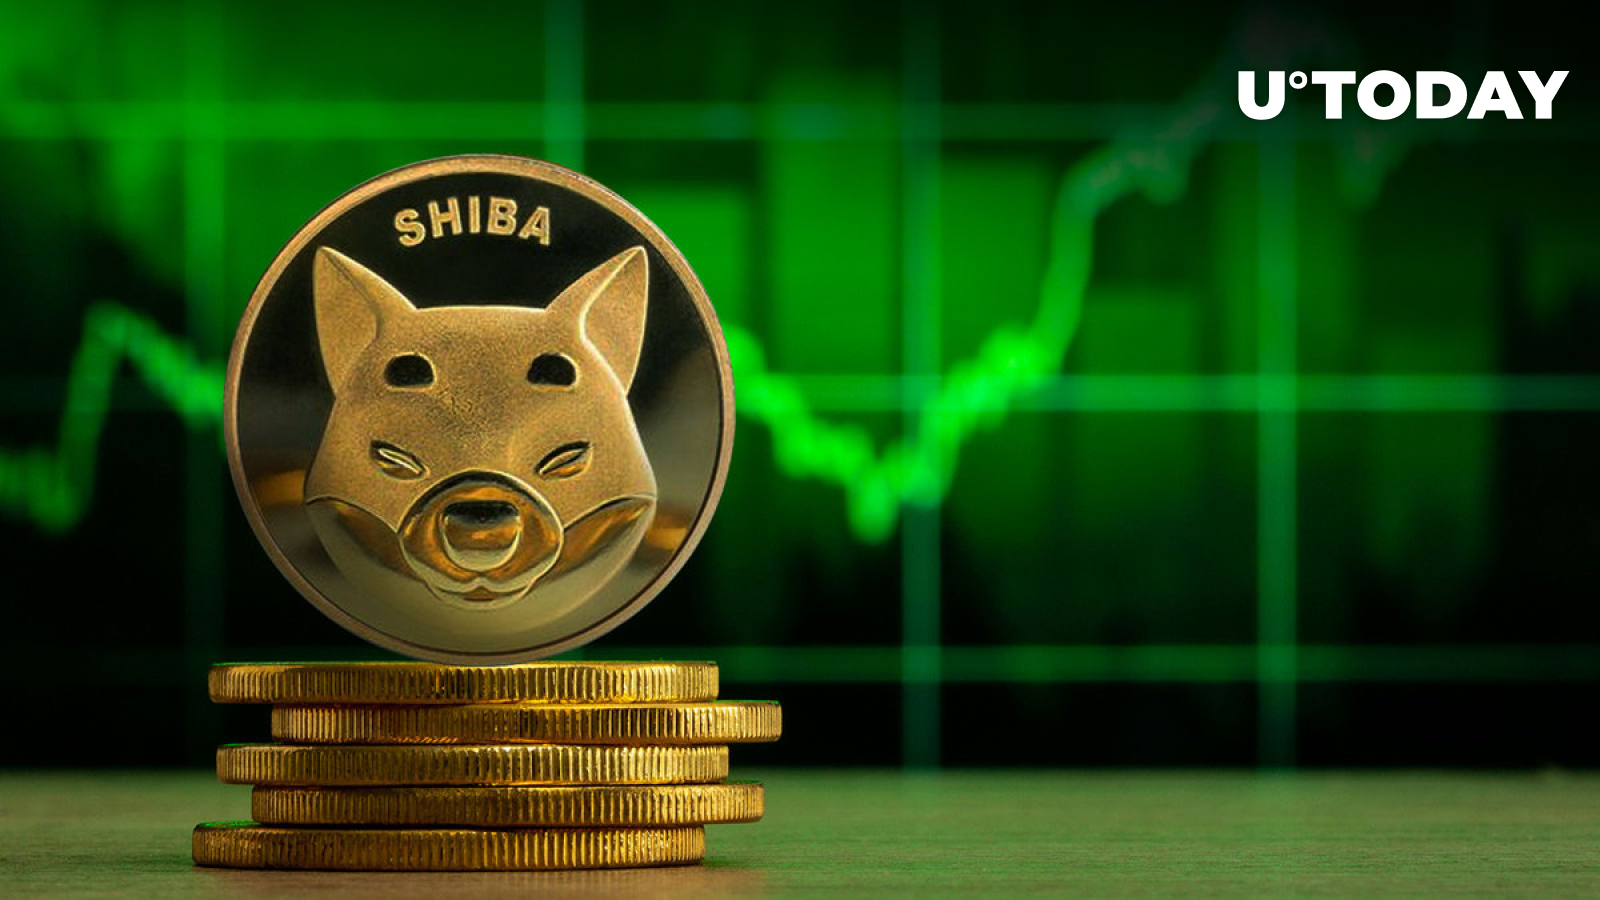 قیمت SHIB سبز می شود زیرا سکه به یکی از دارایی های خریداری شده تبدیل می شود